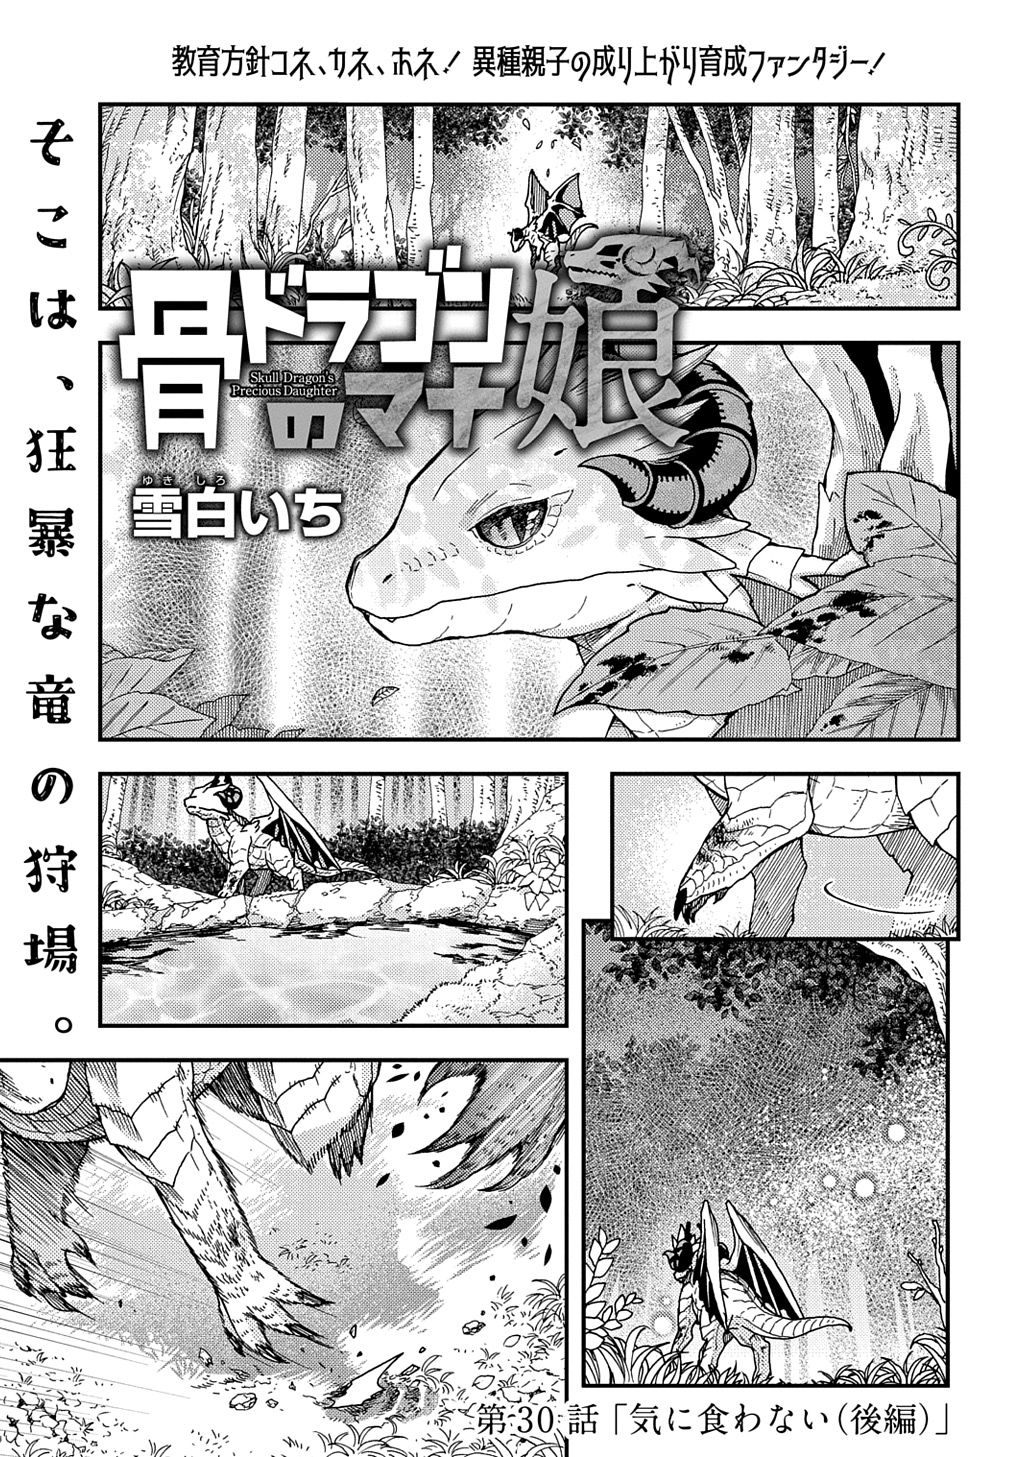 Hone Dragon no Mana Musume - Chapter 30.2 - Page 1